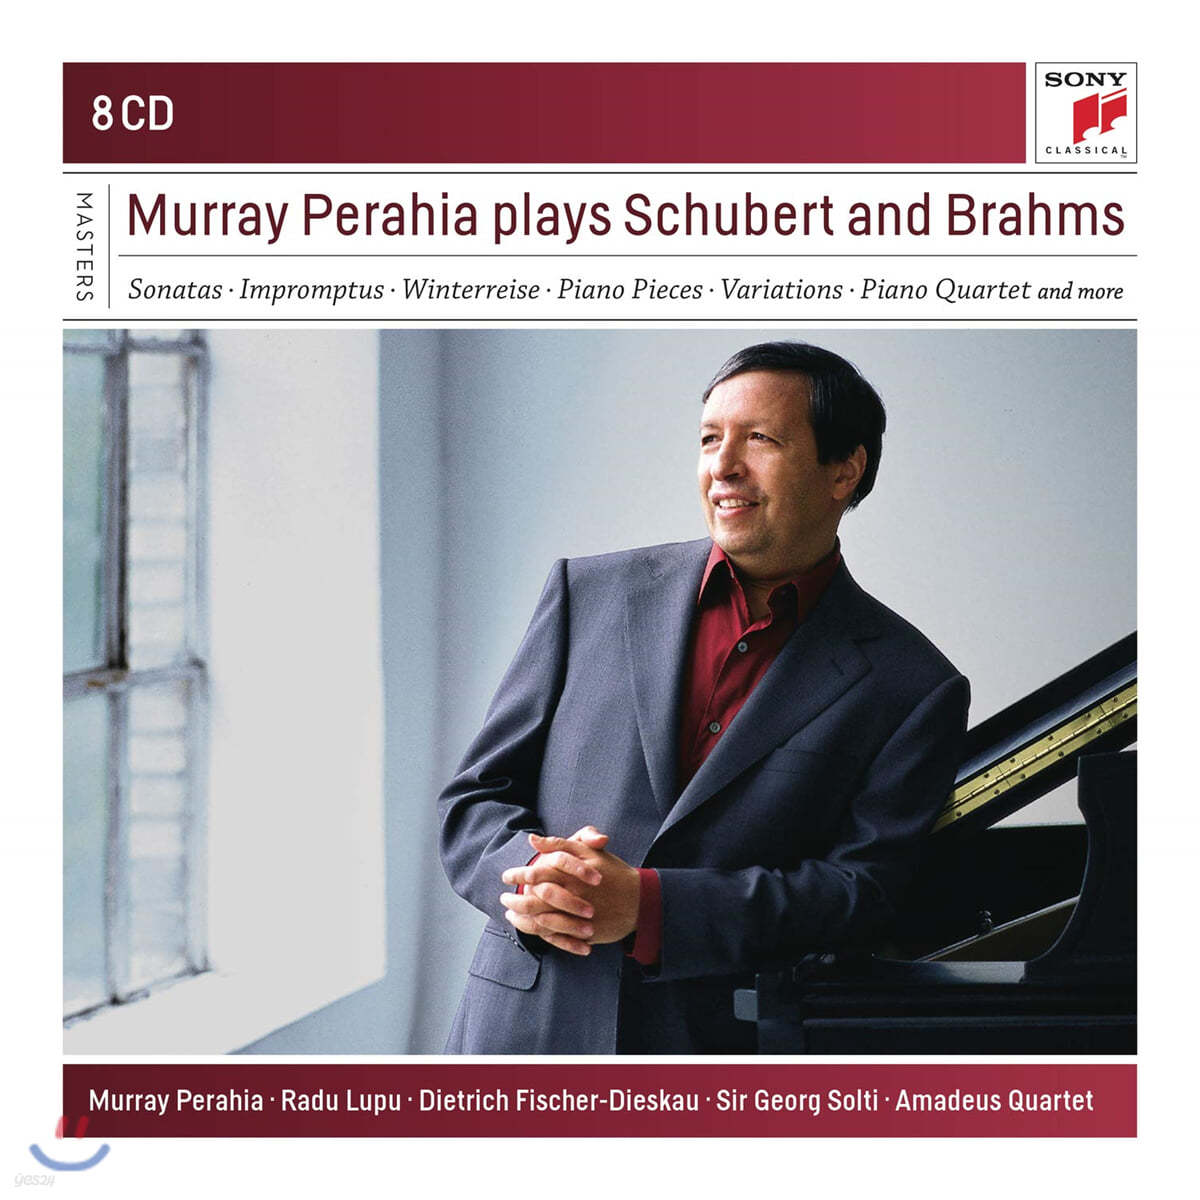 머레이 페라이어가 연주하는 슈베르트 & 브람스 (Murray Perahia Plays Schubert and Brahms) 